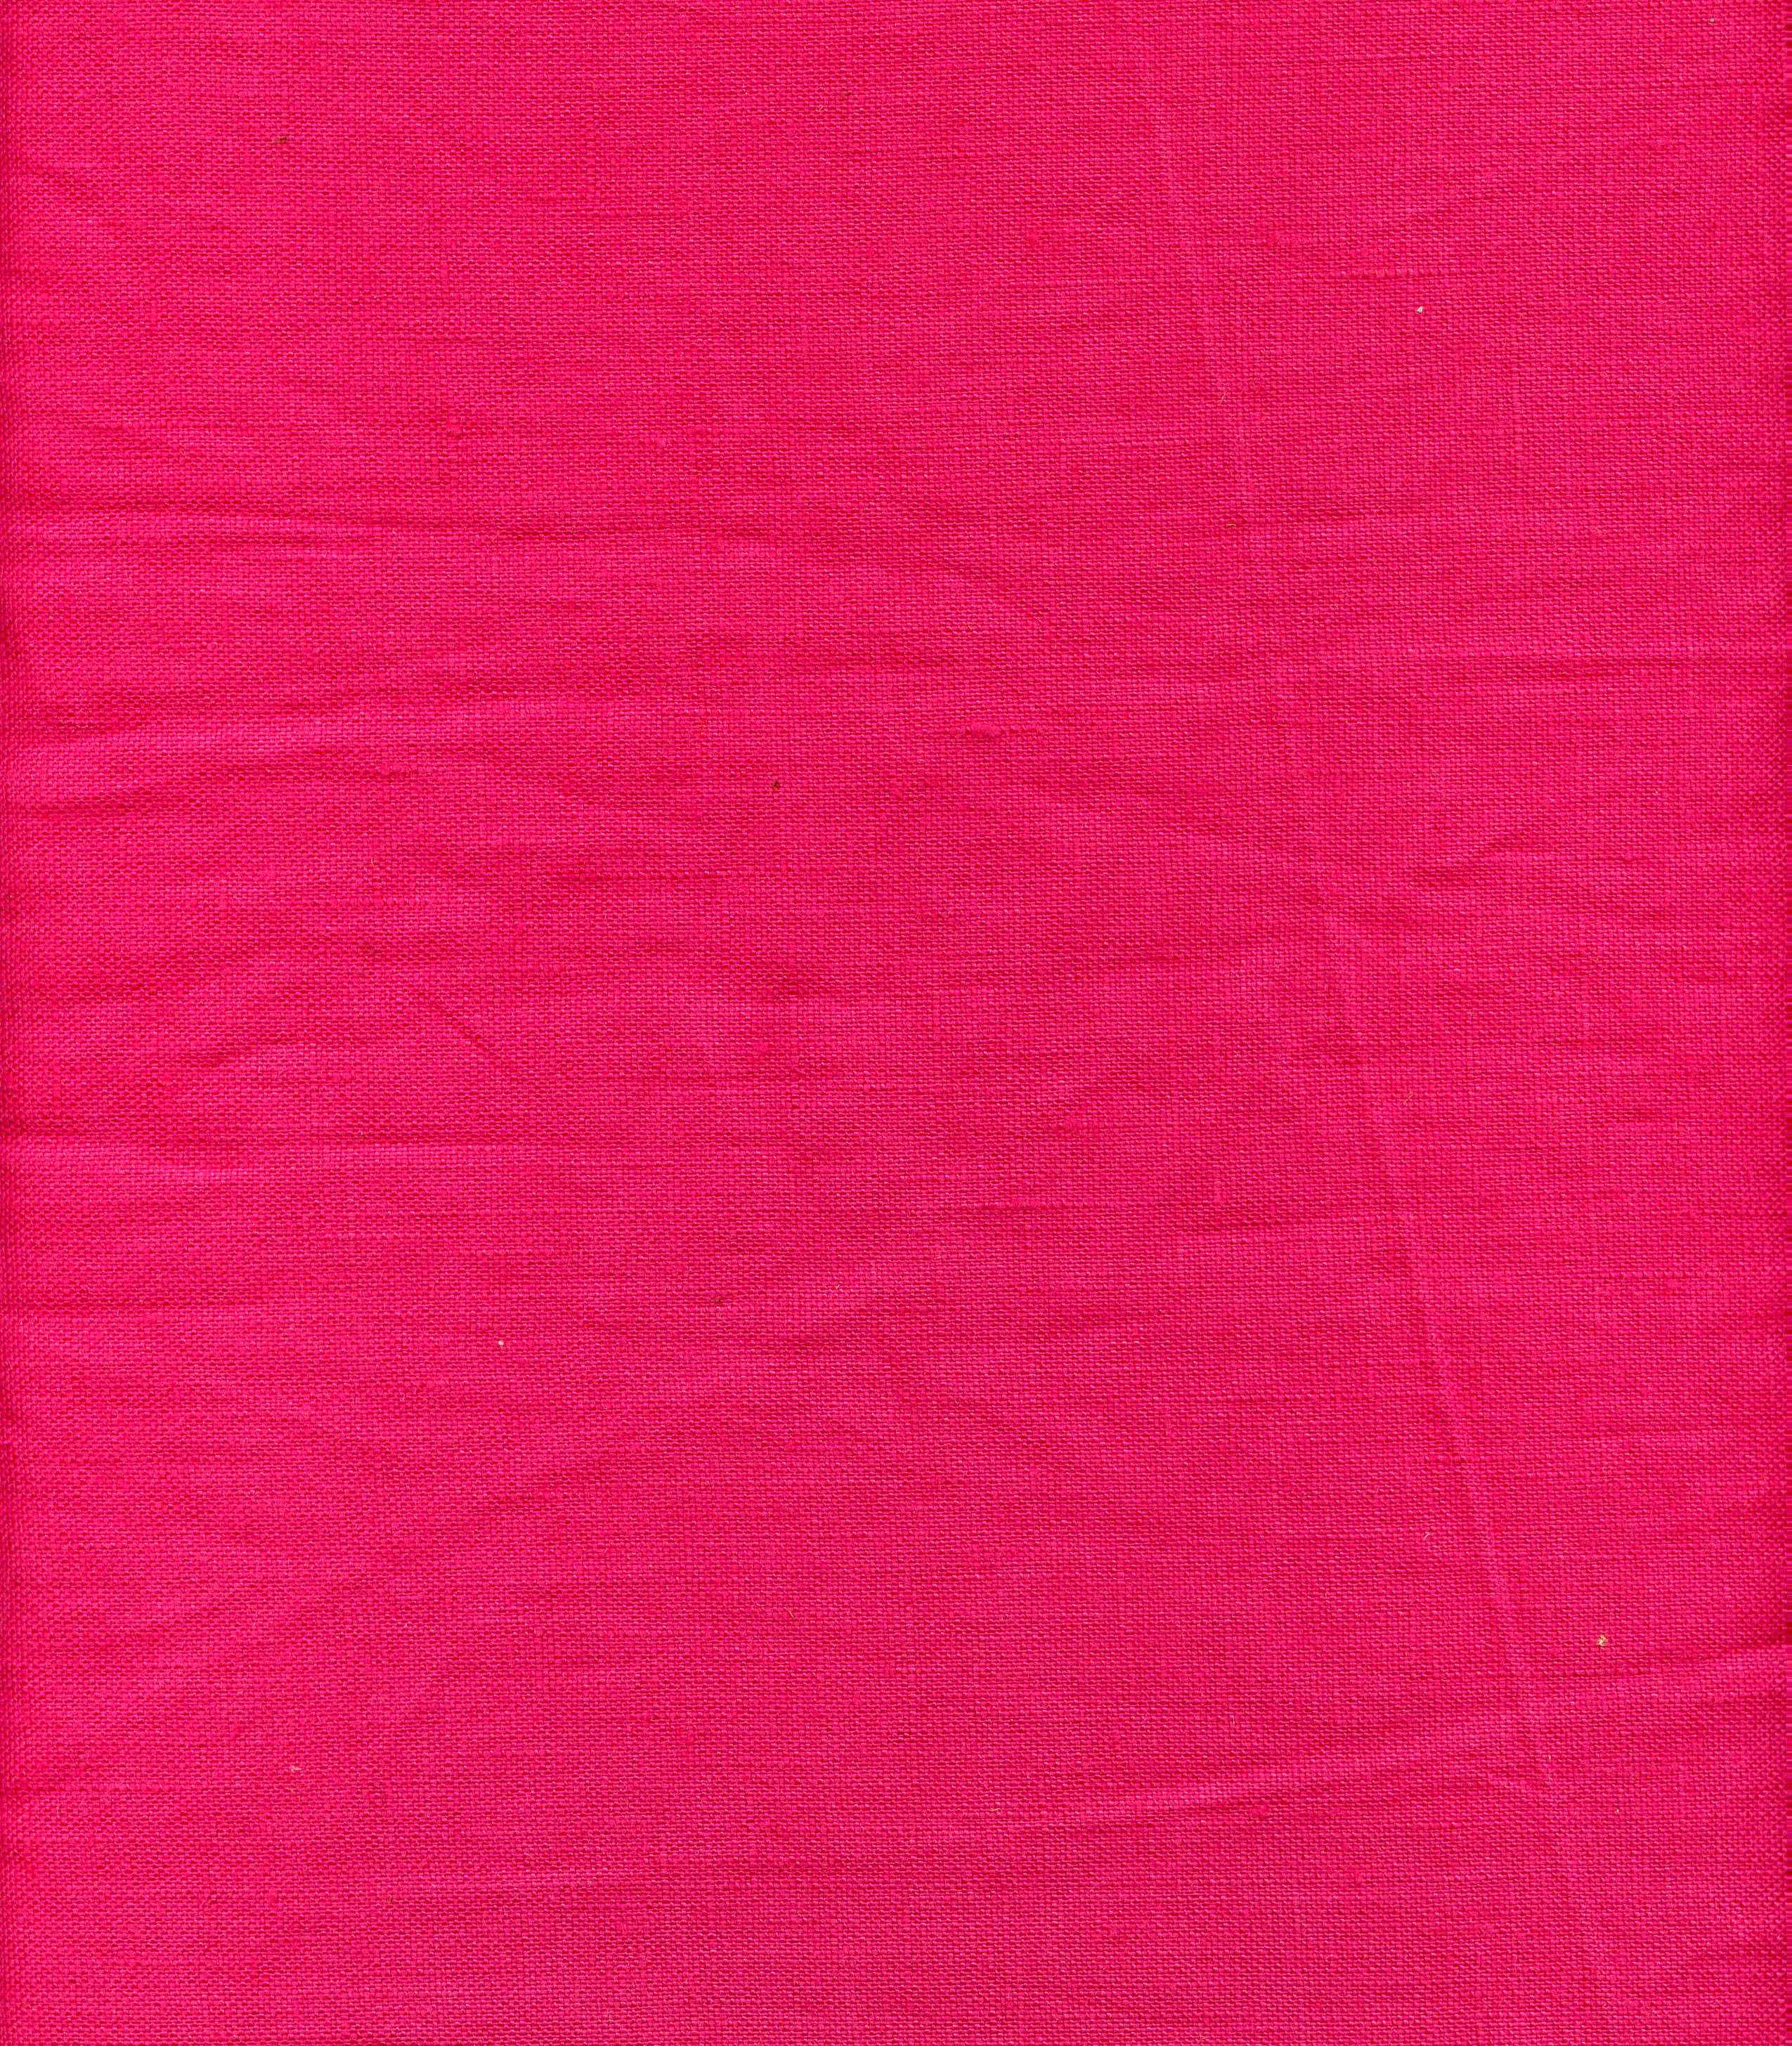 Hot Pink Linen